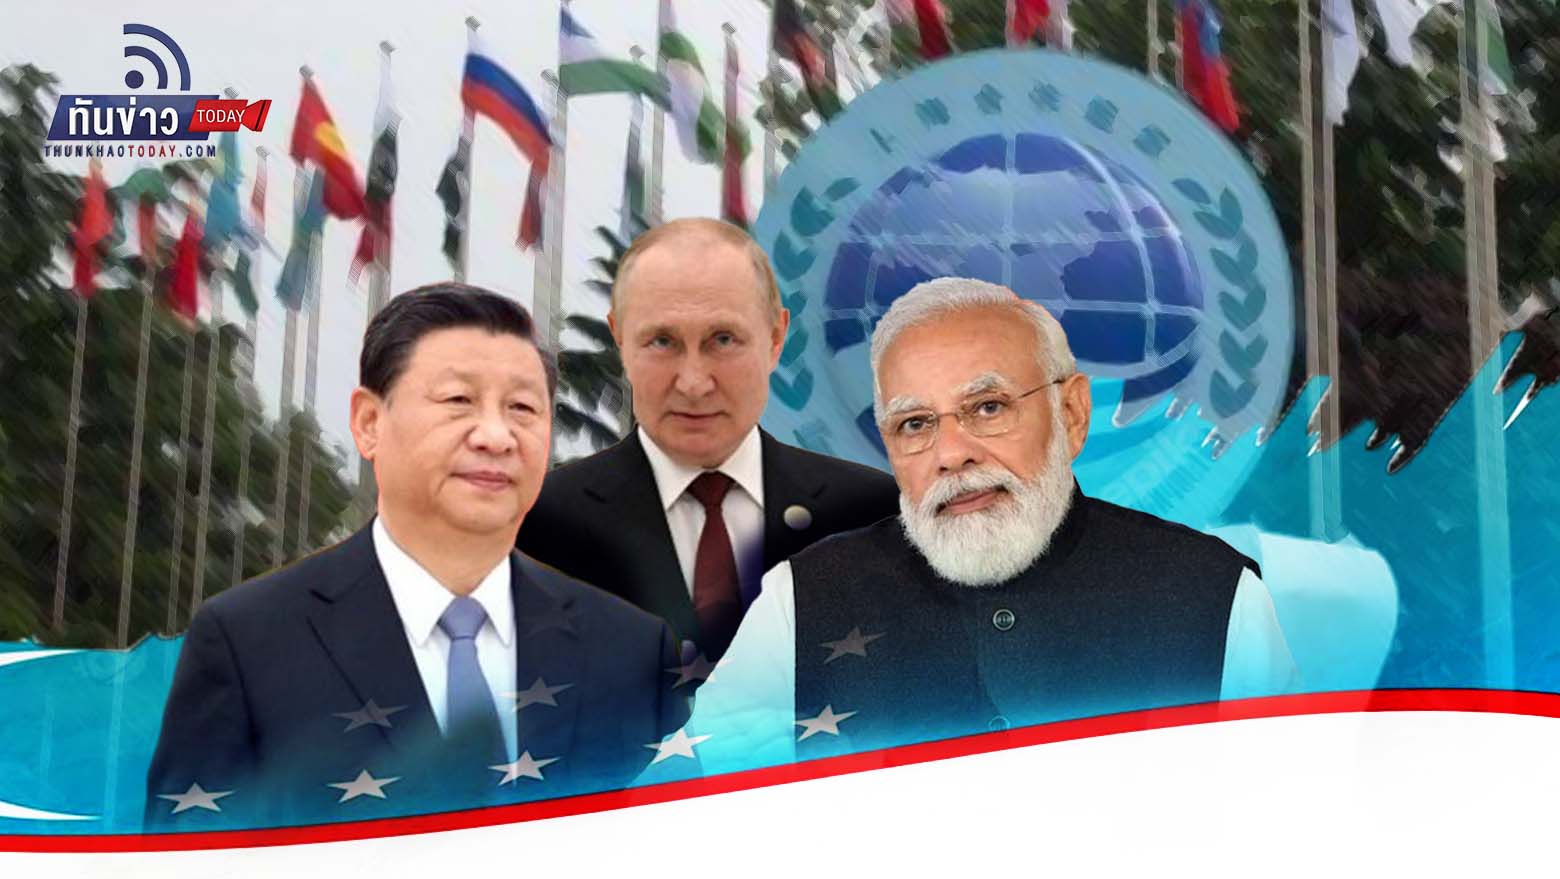 “จับตา 3 ผู้นำจีน-รัสเซีย-อินเดีย เจอกันที่ อุซเบกิสถาน 15-16 ก.ย.นี้ ในงานการประชุมสุดยอดองค์การความร่วมมือเซี่ยงไฮ้ (SCO)